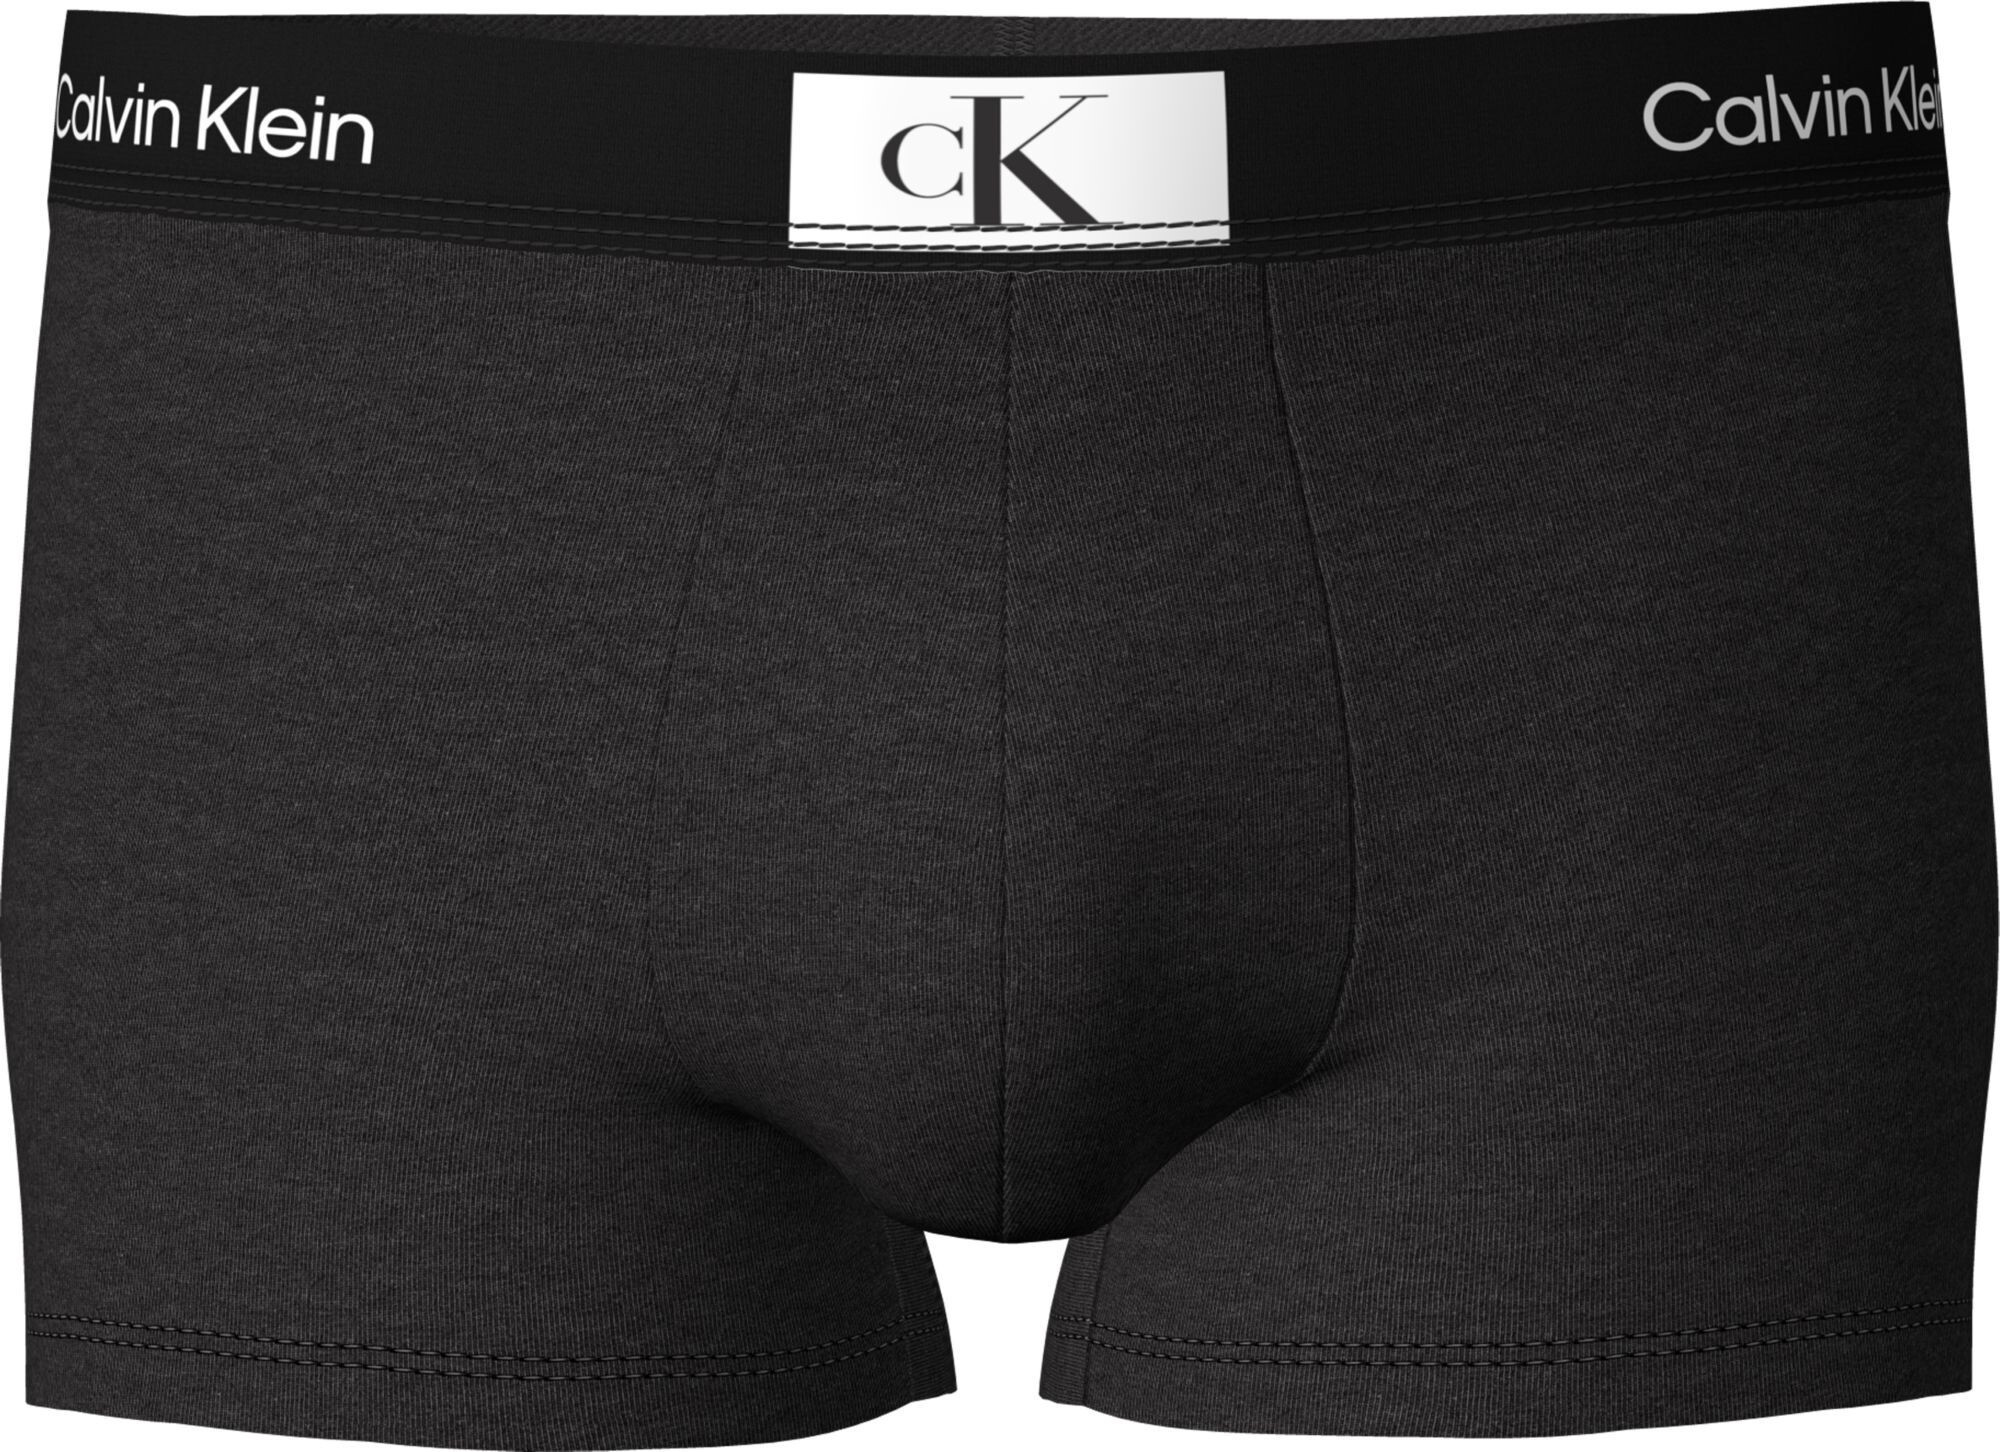 Pánské boxerky Calvin Klein s krátkou nohavičkou NB3403A černá L